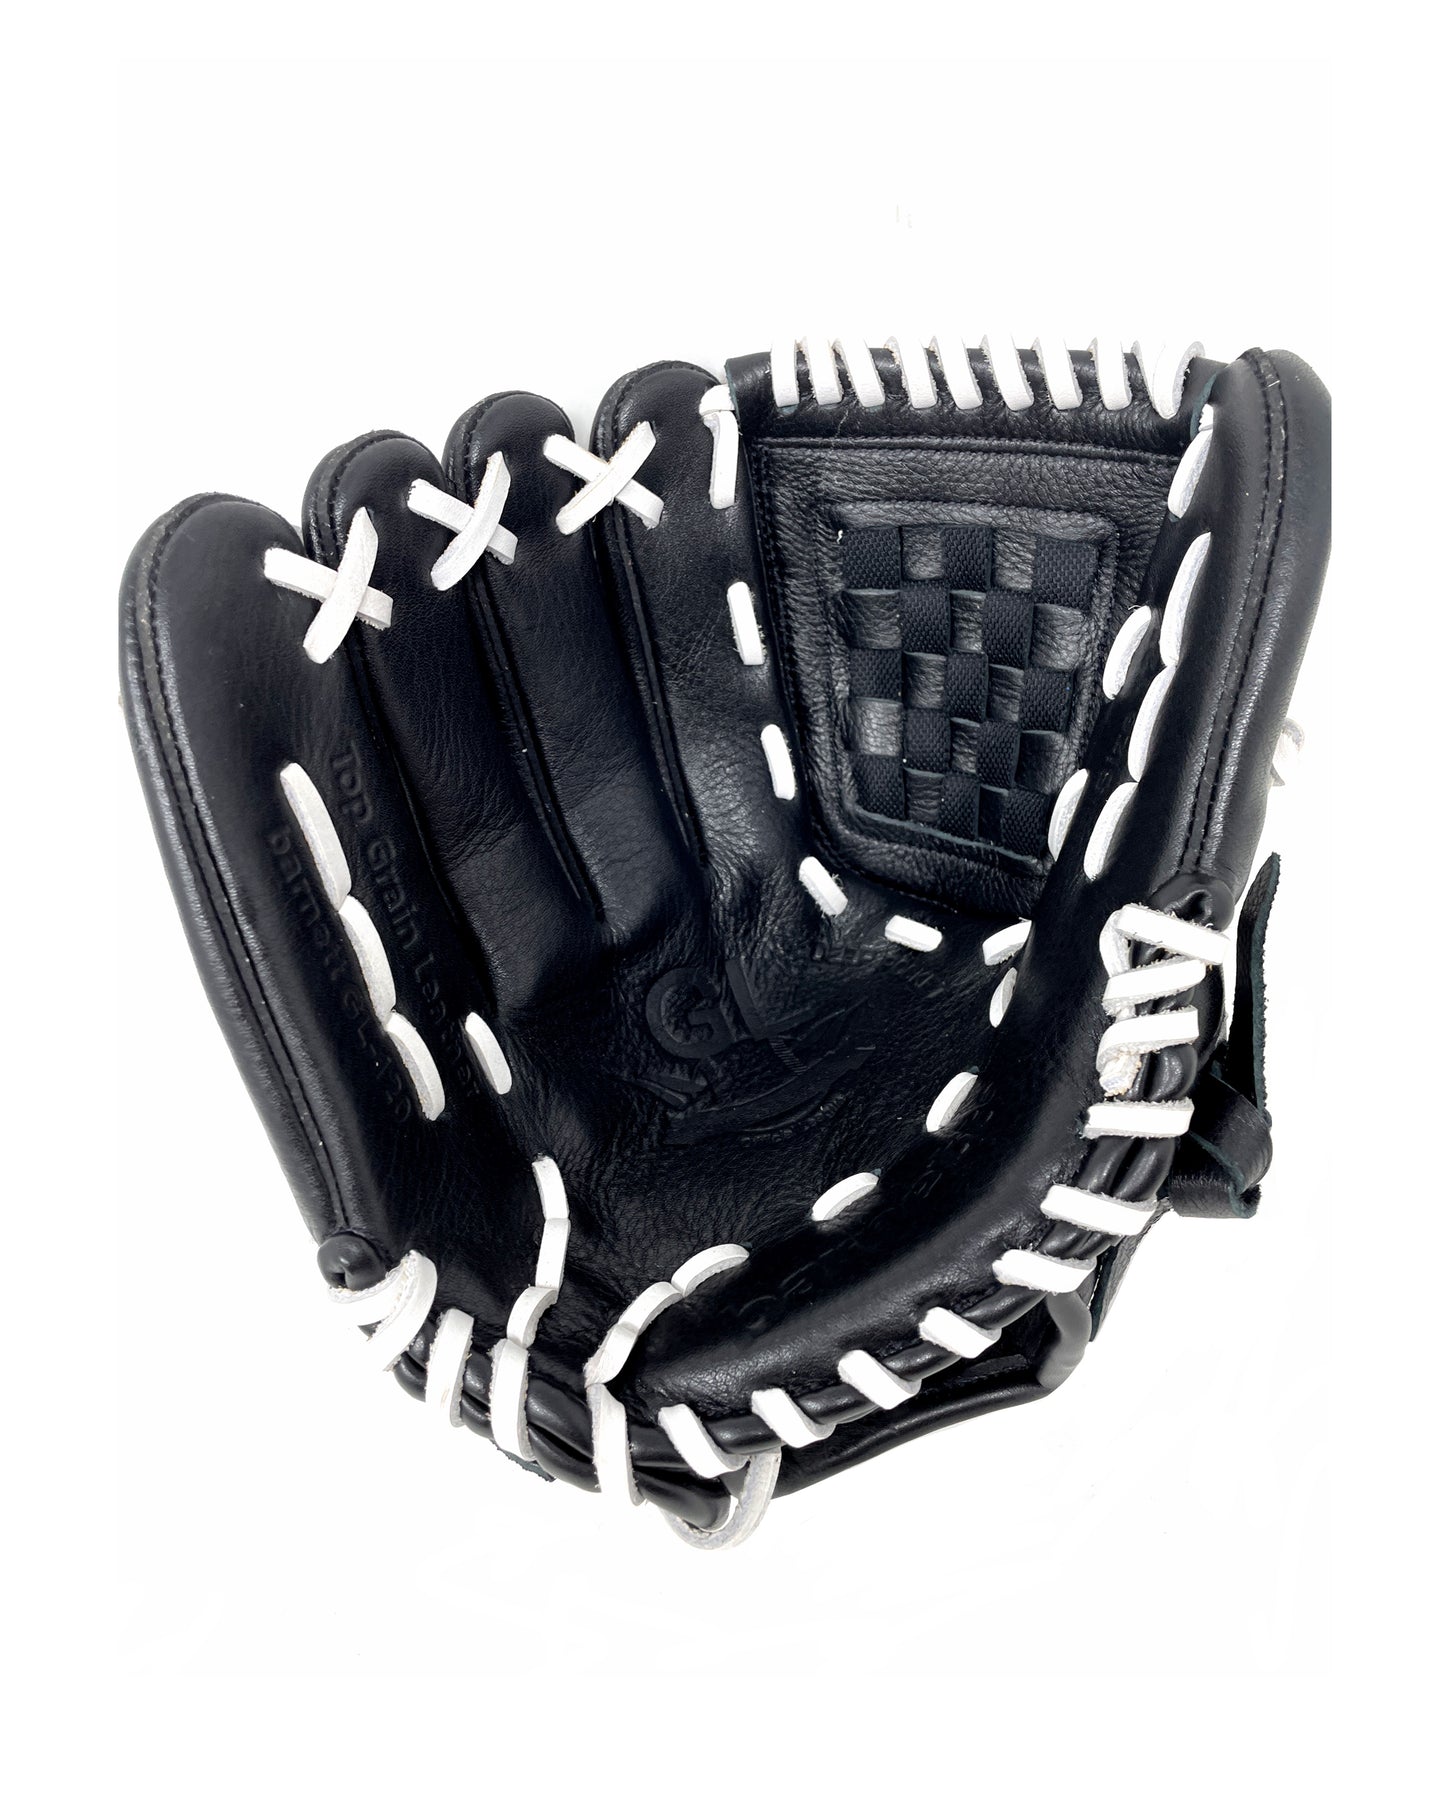 GL-120 outfield 12 soutěžní kožené baseballové rukavice, černé